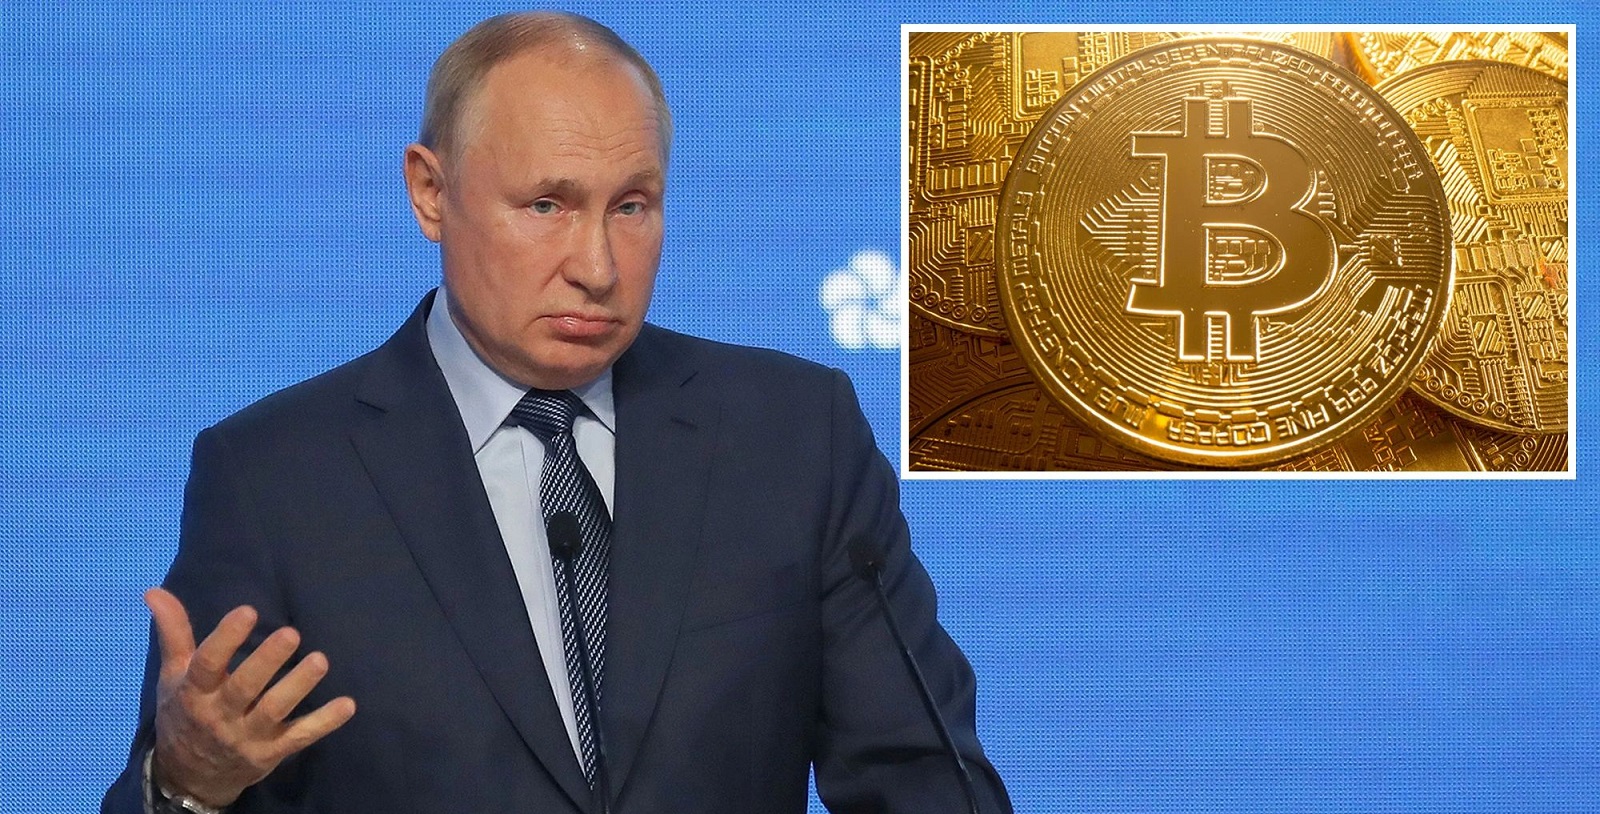 Prezident Vladimir Putin žiada ruské úrady o konsenzus ohľadom kryptomien